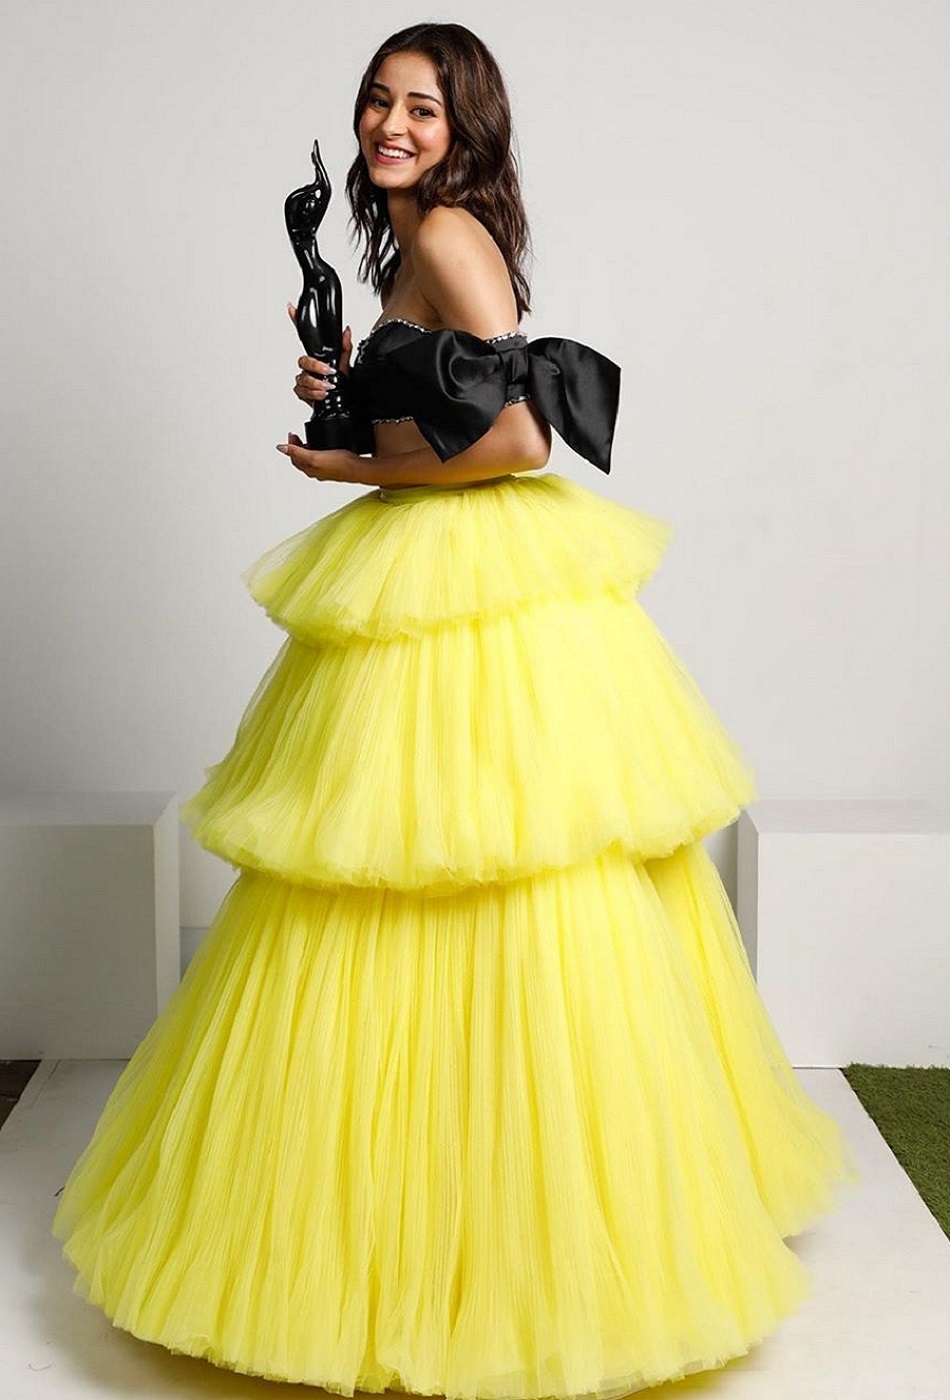 Bollywood actress Ananya pandey hot dress photo